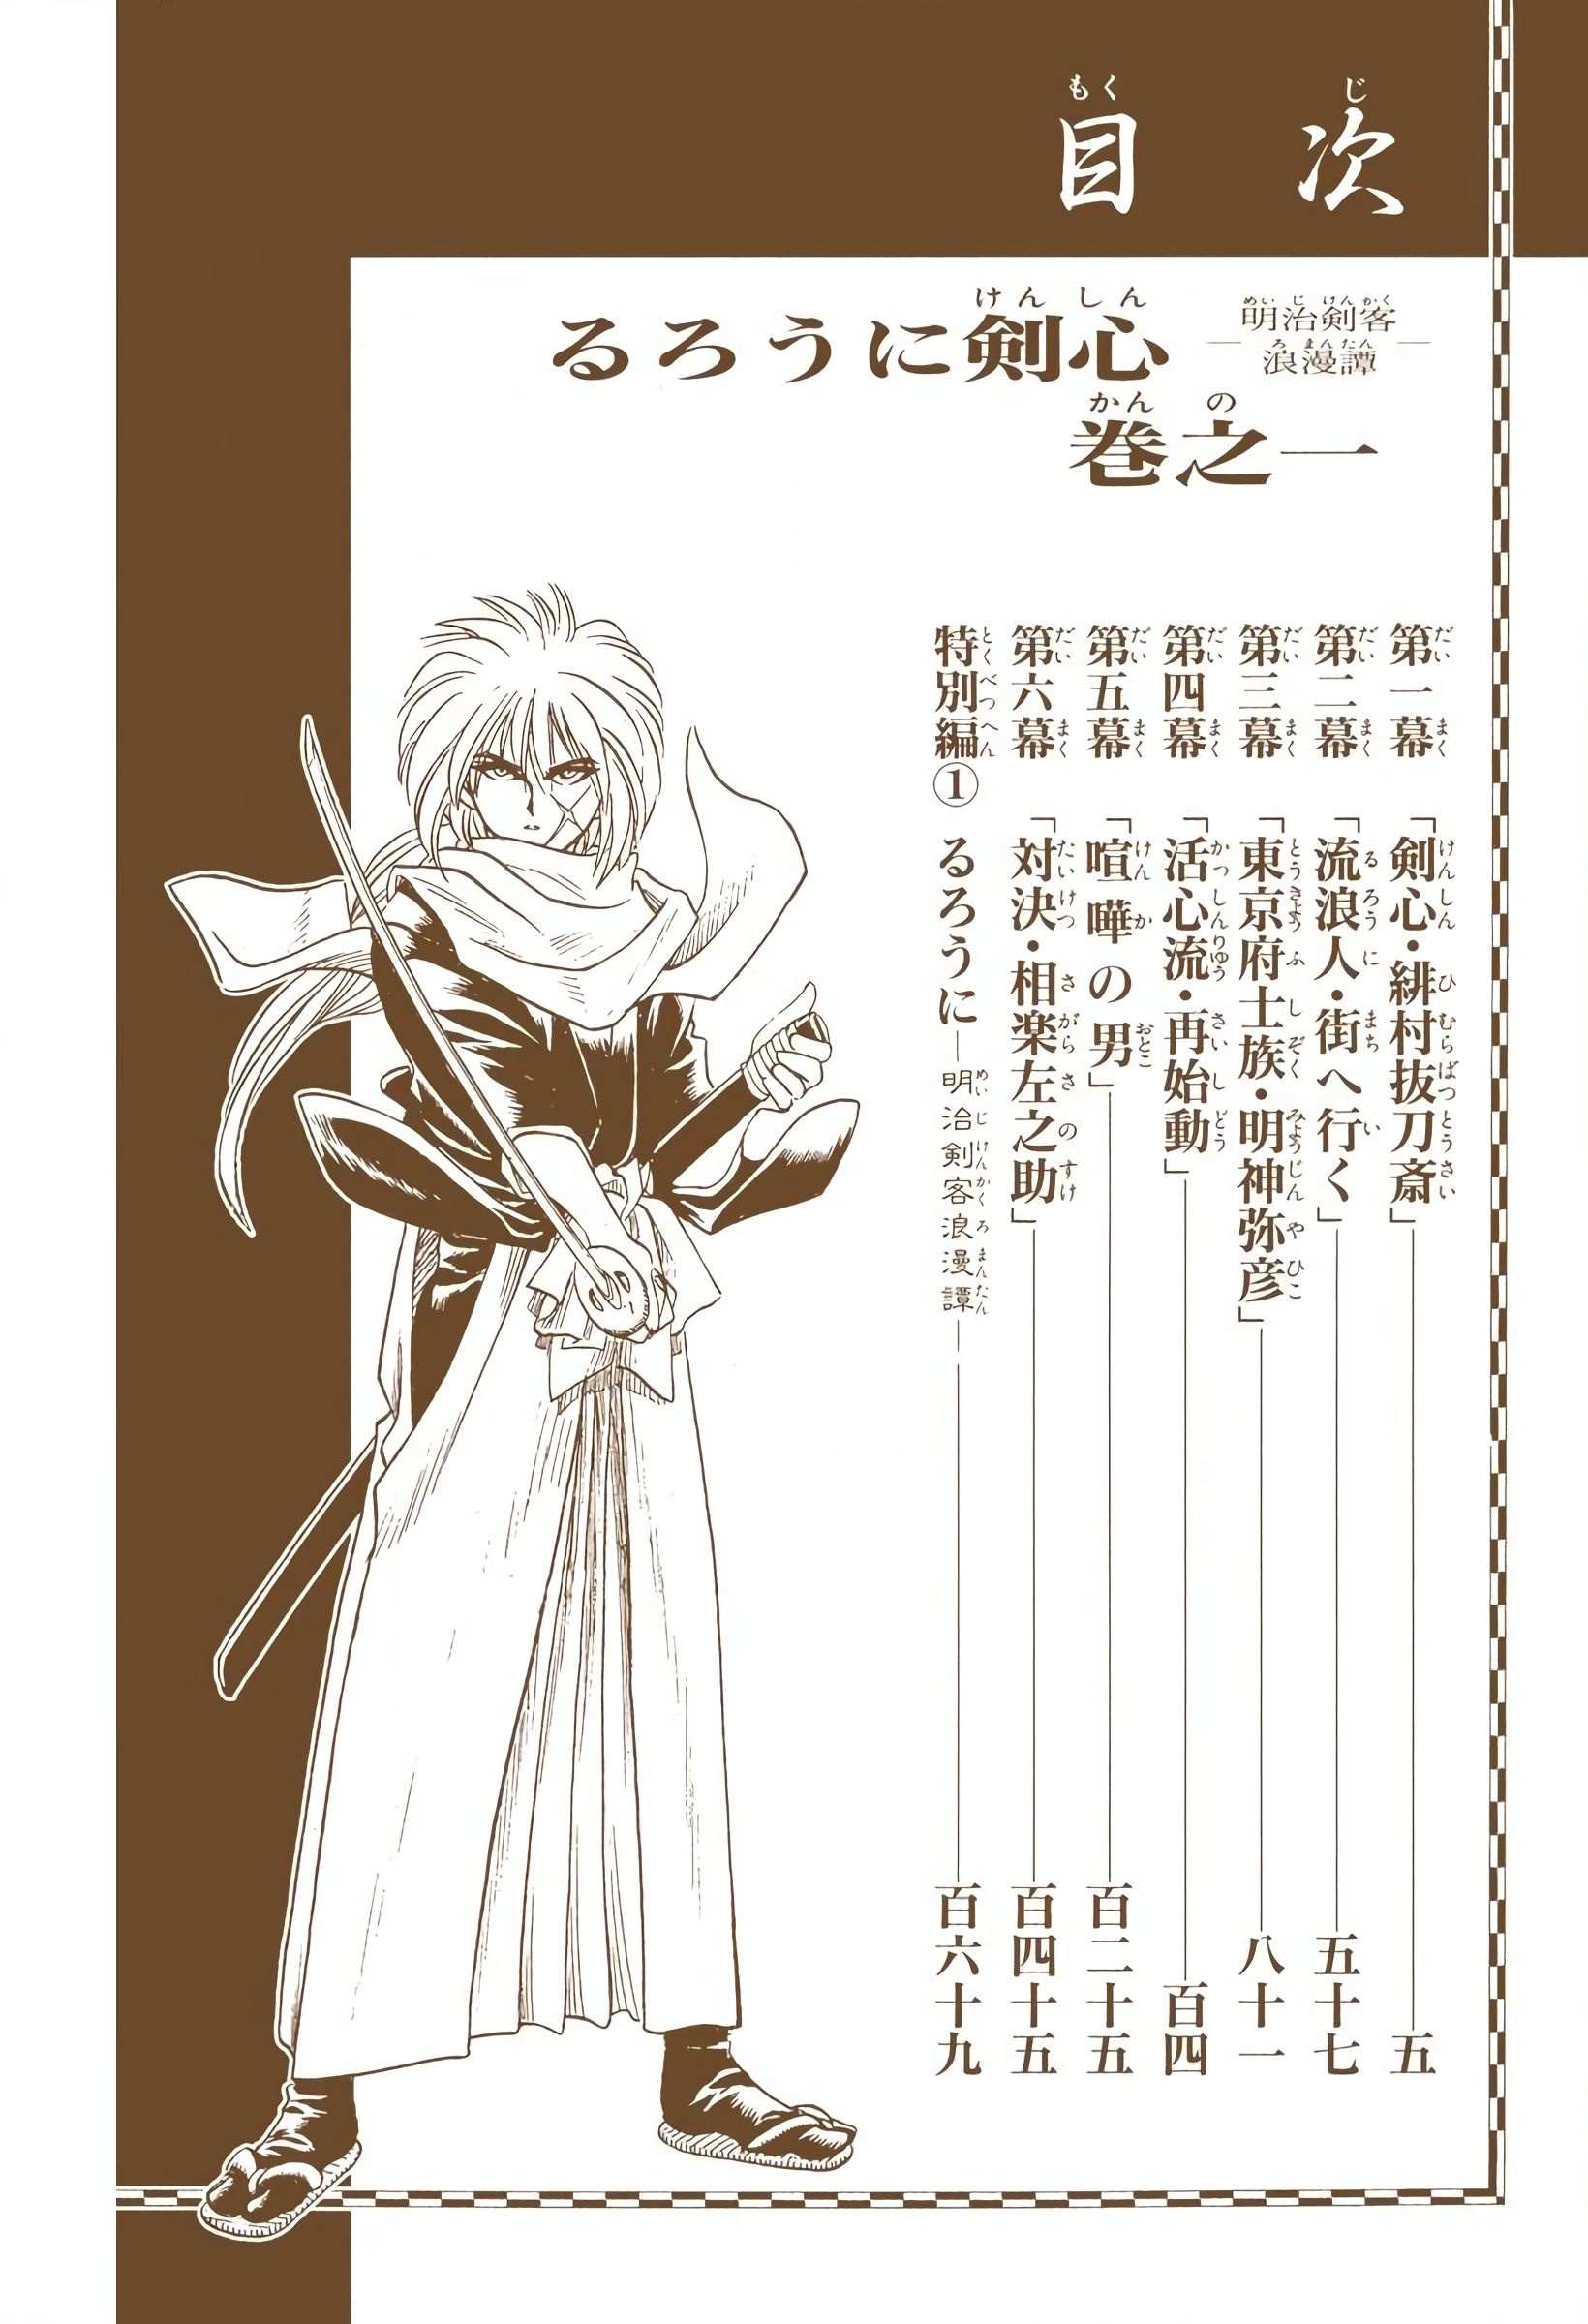 Rurouni Kenshin: Meiji Kenkaku Romantan - Digital Colored - chapter 1 - #5